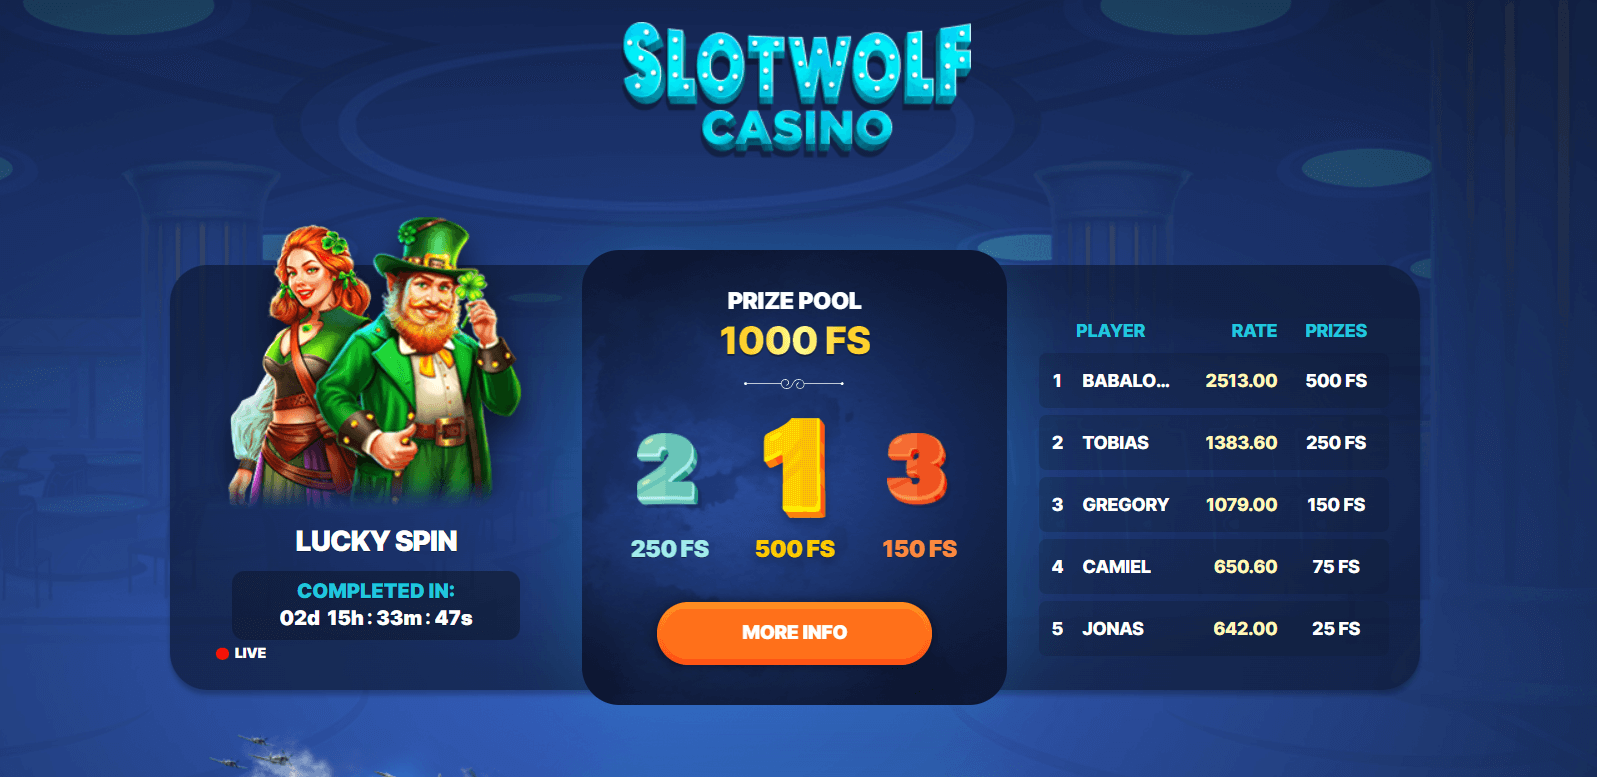 SlotWolf casino promos